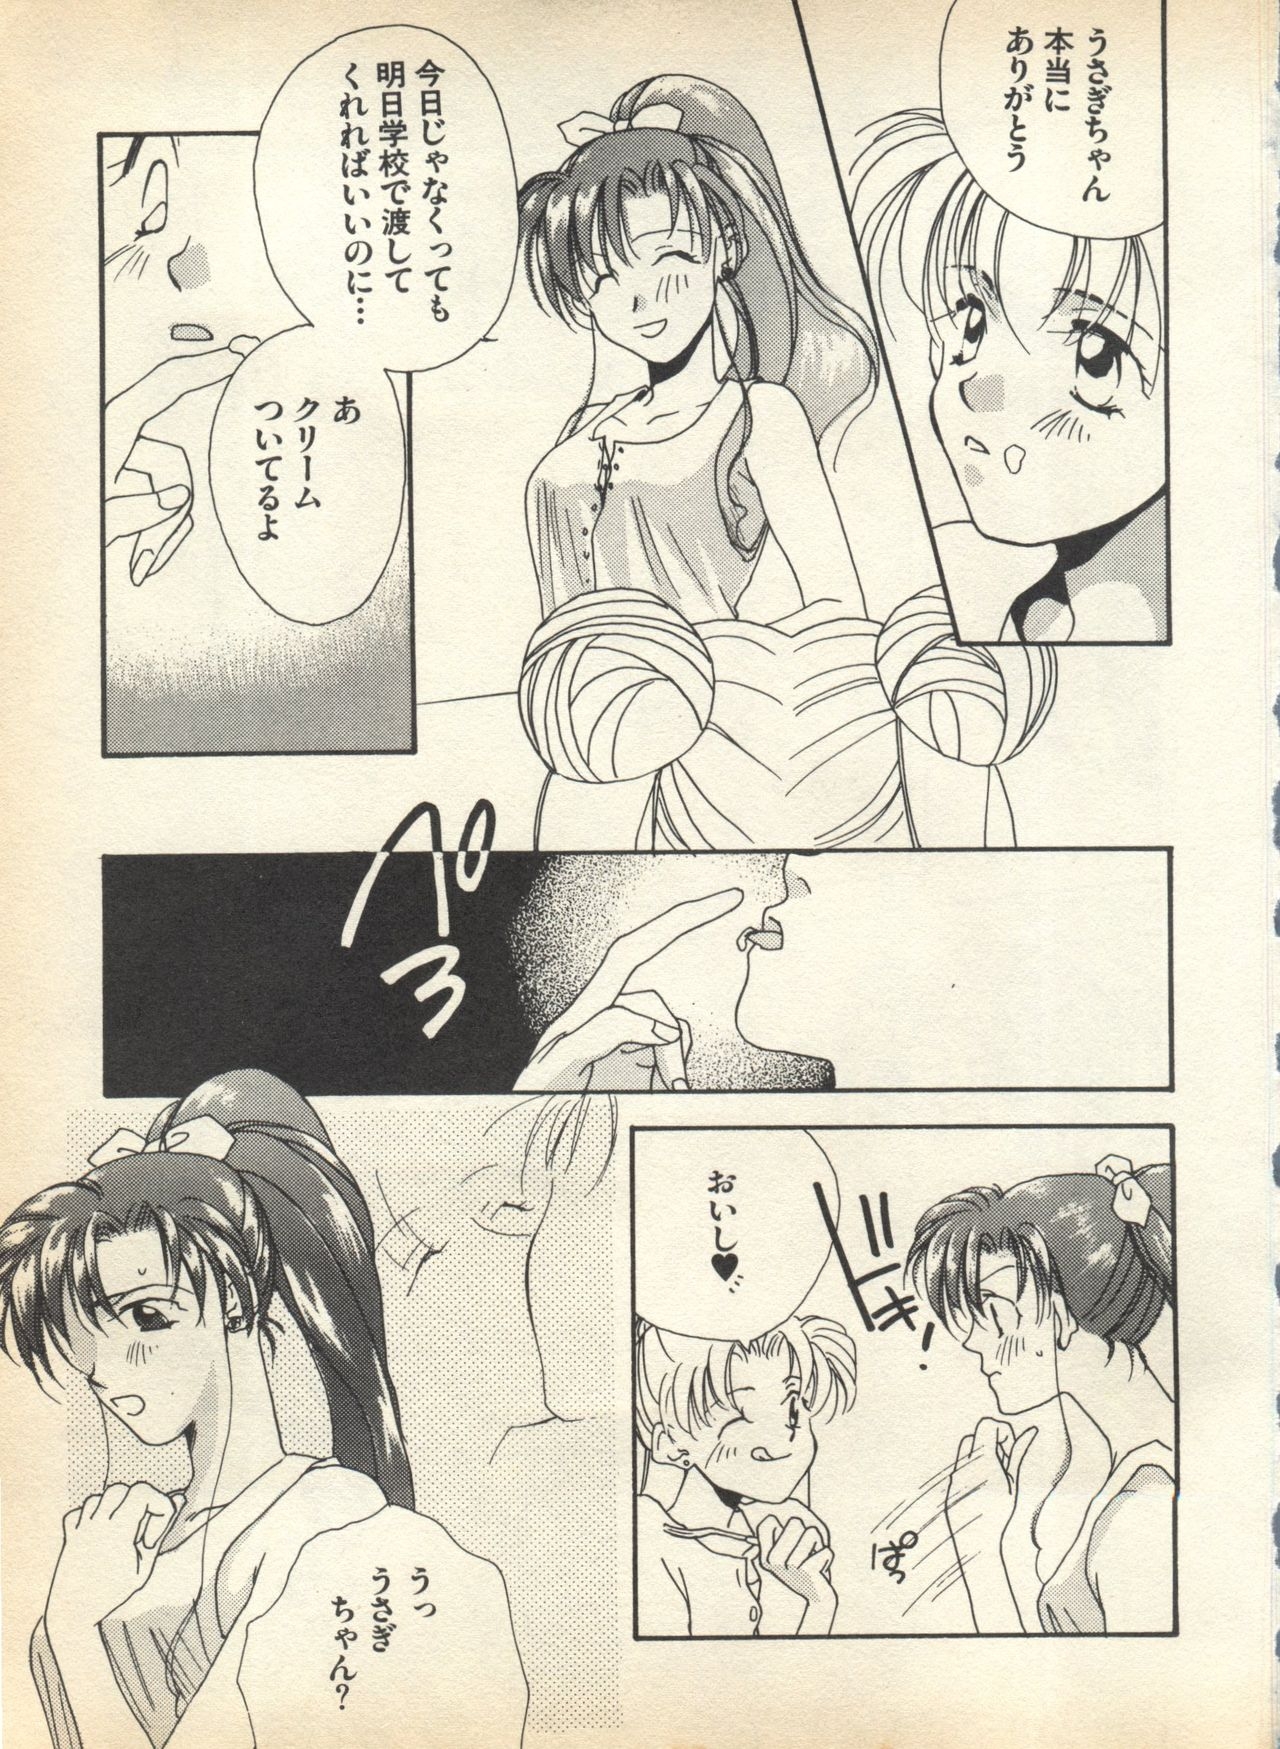 [Anthology] Lunatic Party 7 (Bishoujo Senshi Sailor Moon) 148